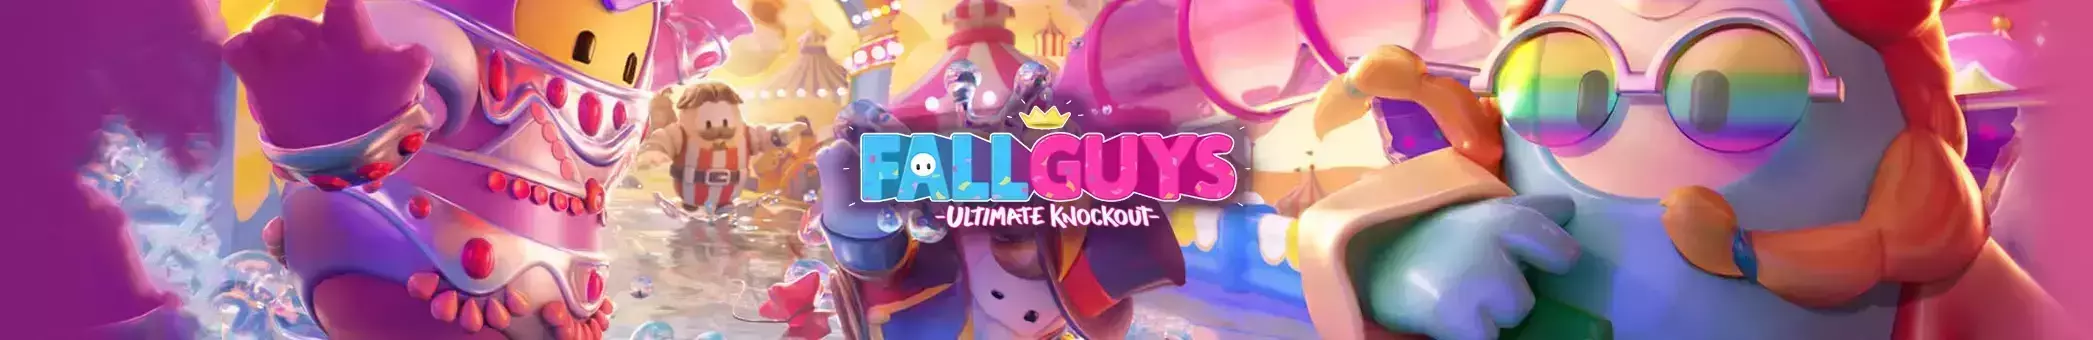 Fall Guys Digital Edition